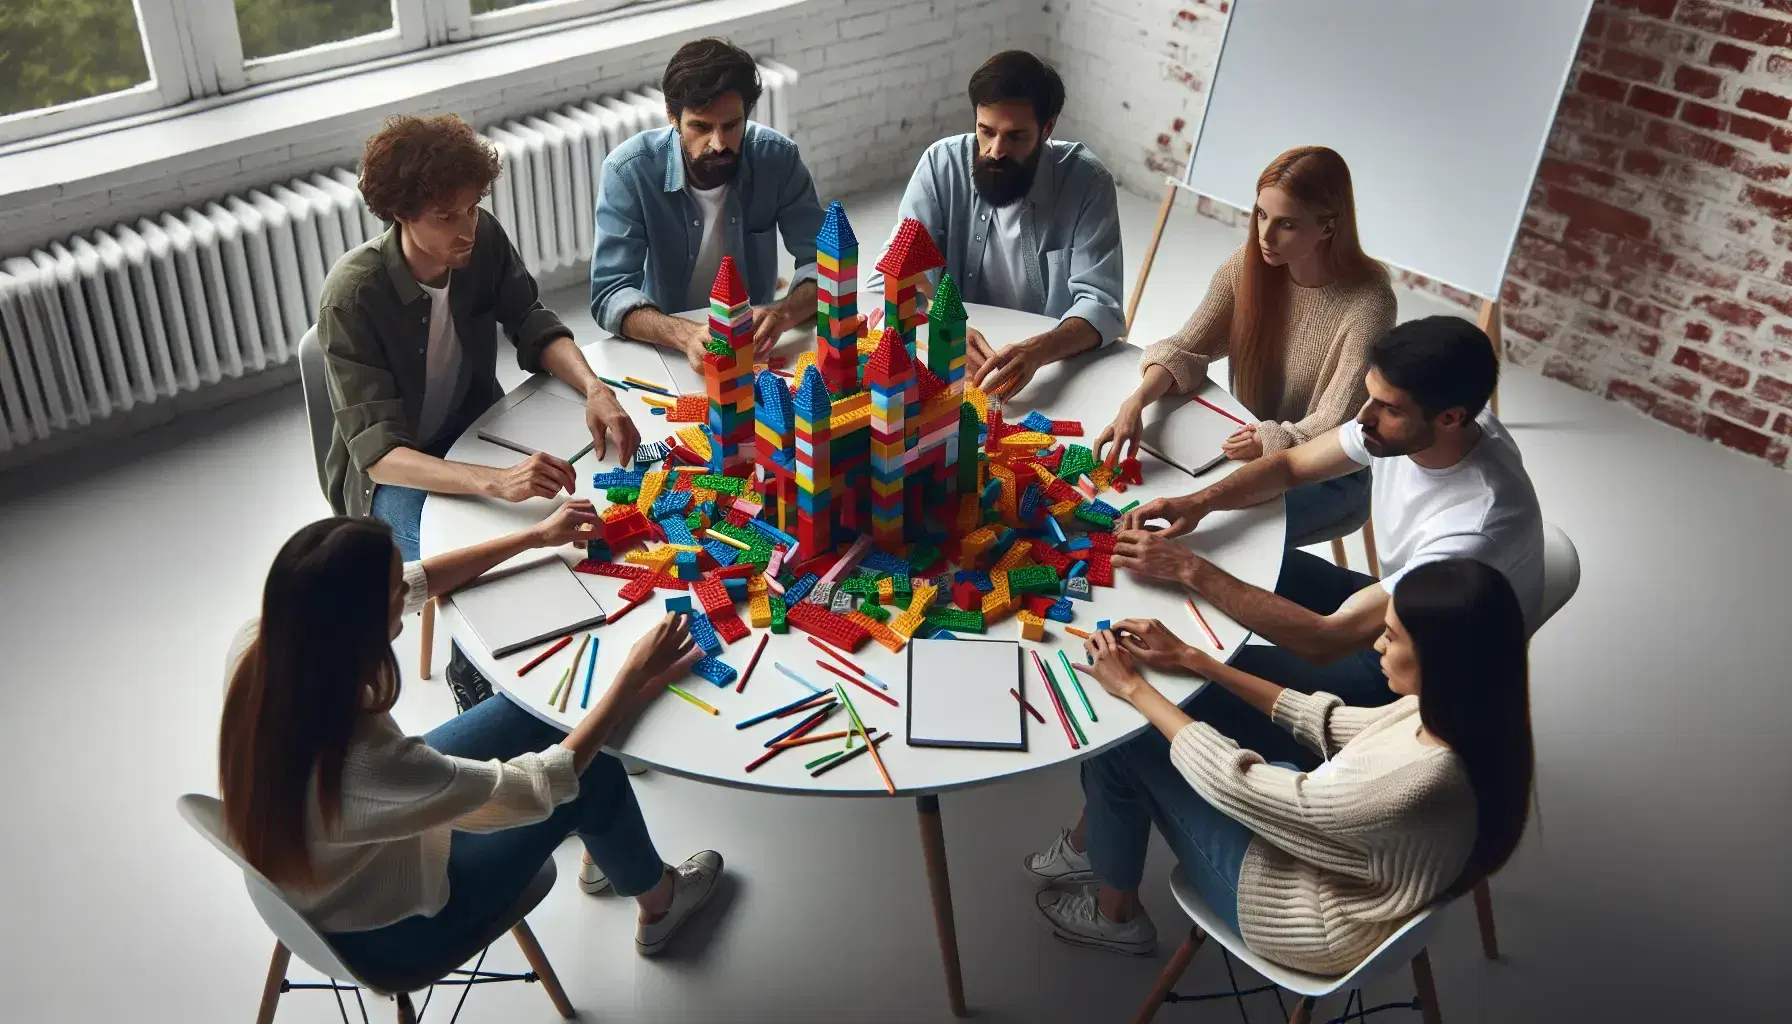 Grupo de cinco personas colaborando en la construcción de estructuras con bloques de construcción de colores en una mesa redonda.